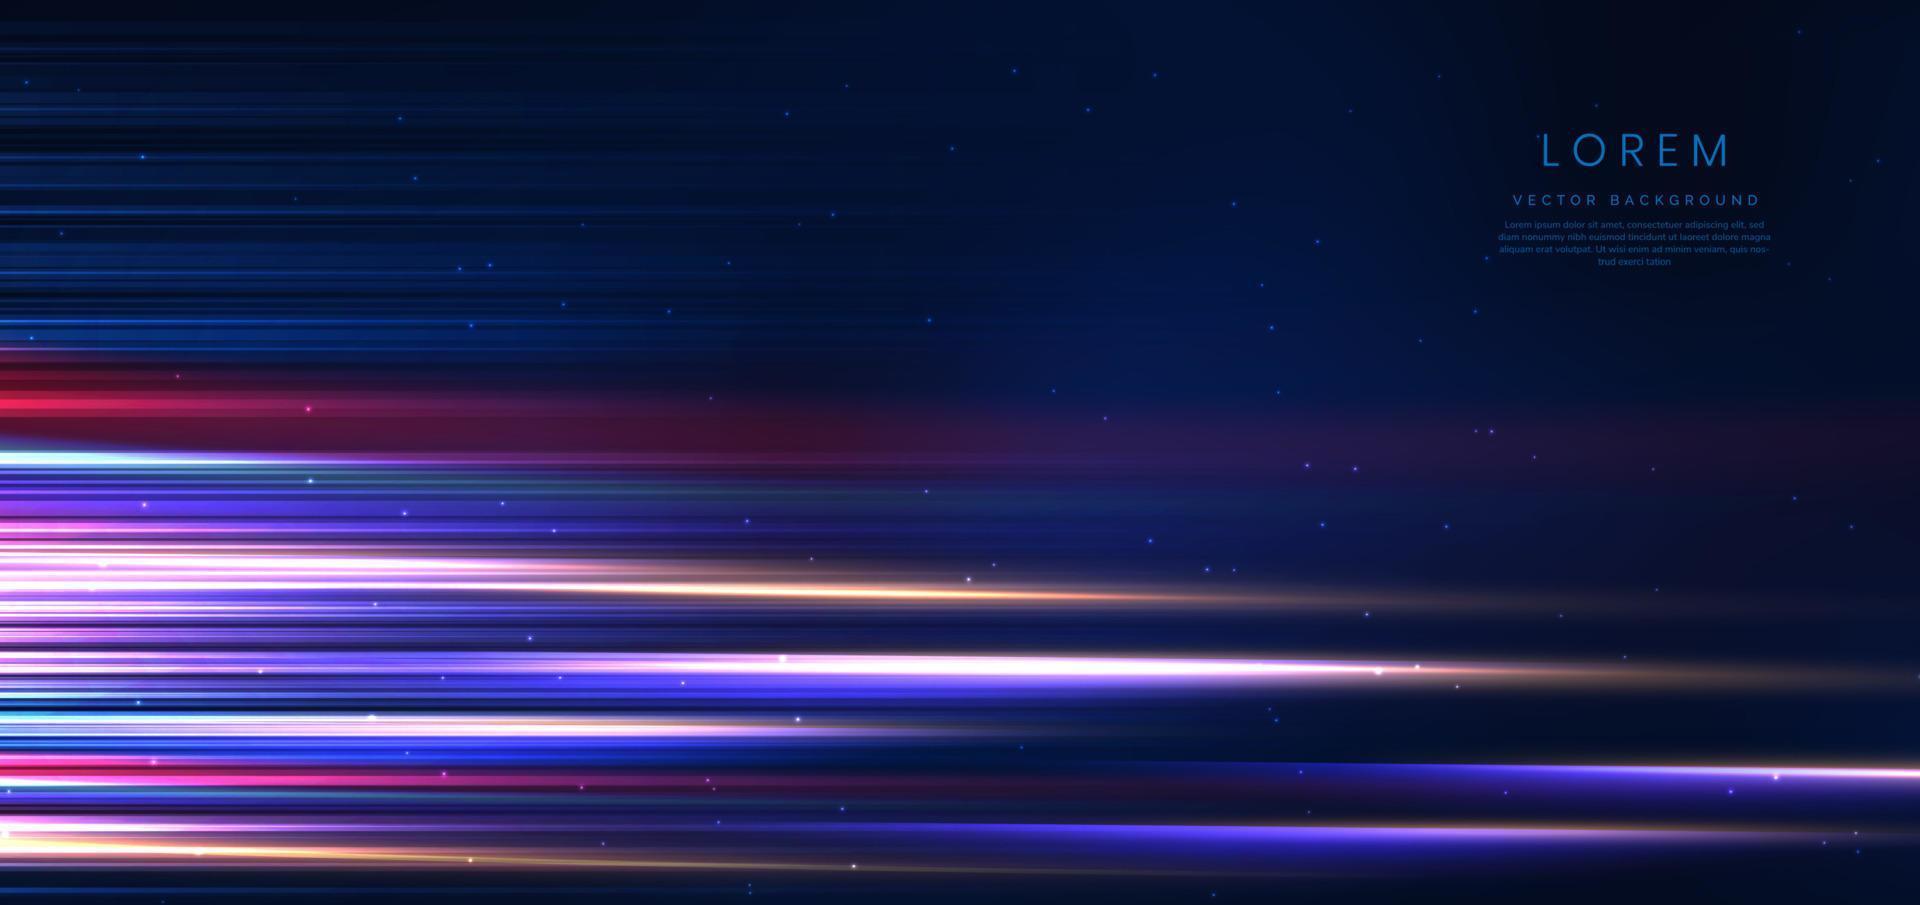 tecnología abstracta líneas de luz azul y rosa brillantes horizontales de neón futurista con efecto de desenfoque de movimiento de velocidad sobre fondo azul oscuro. vector